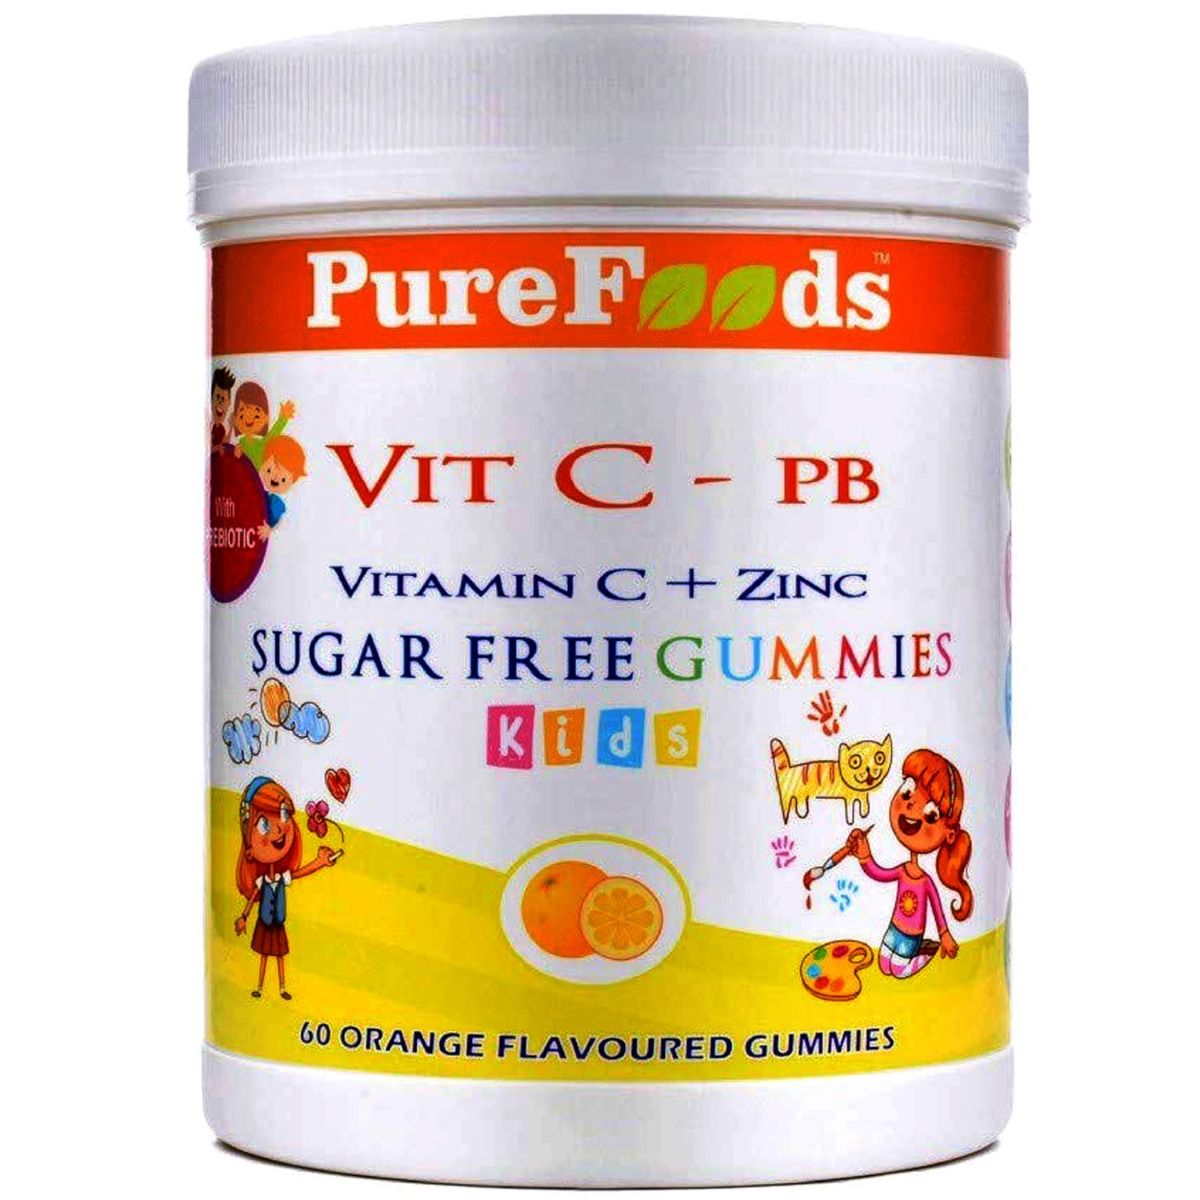 Buy Pure Foods Vitamin C + Zinc Orange Flavoured Kids Gummies, 60 Count Online